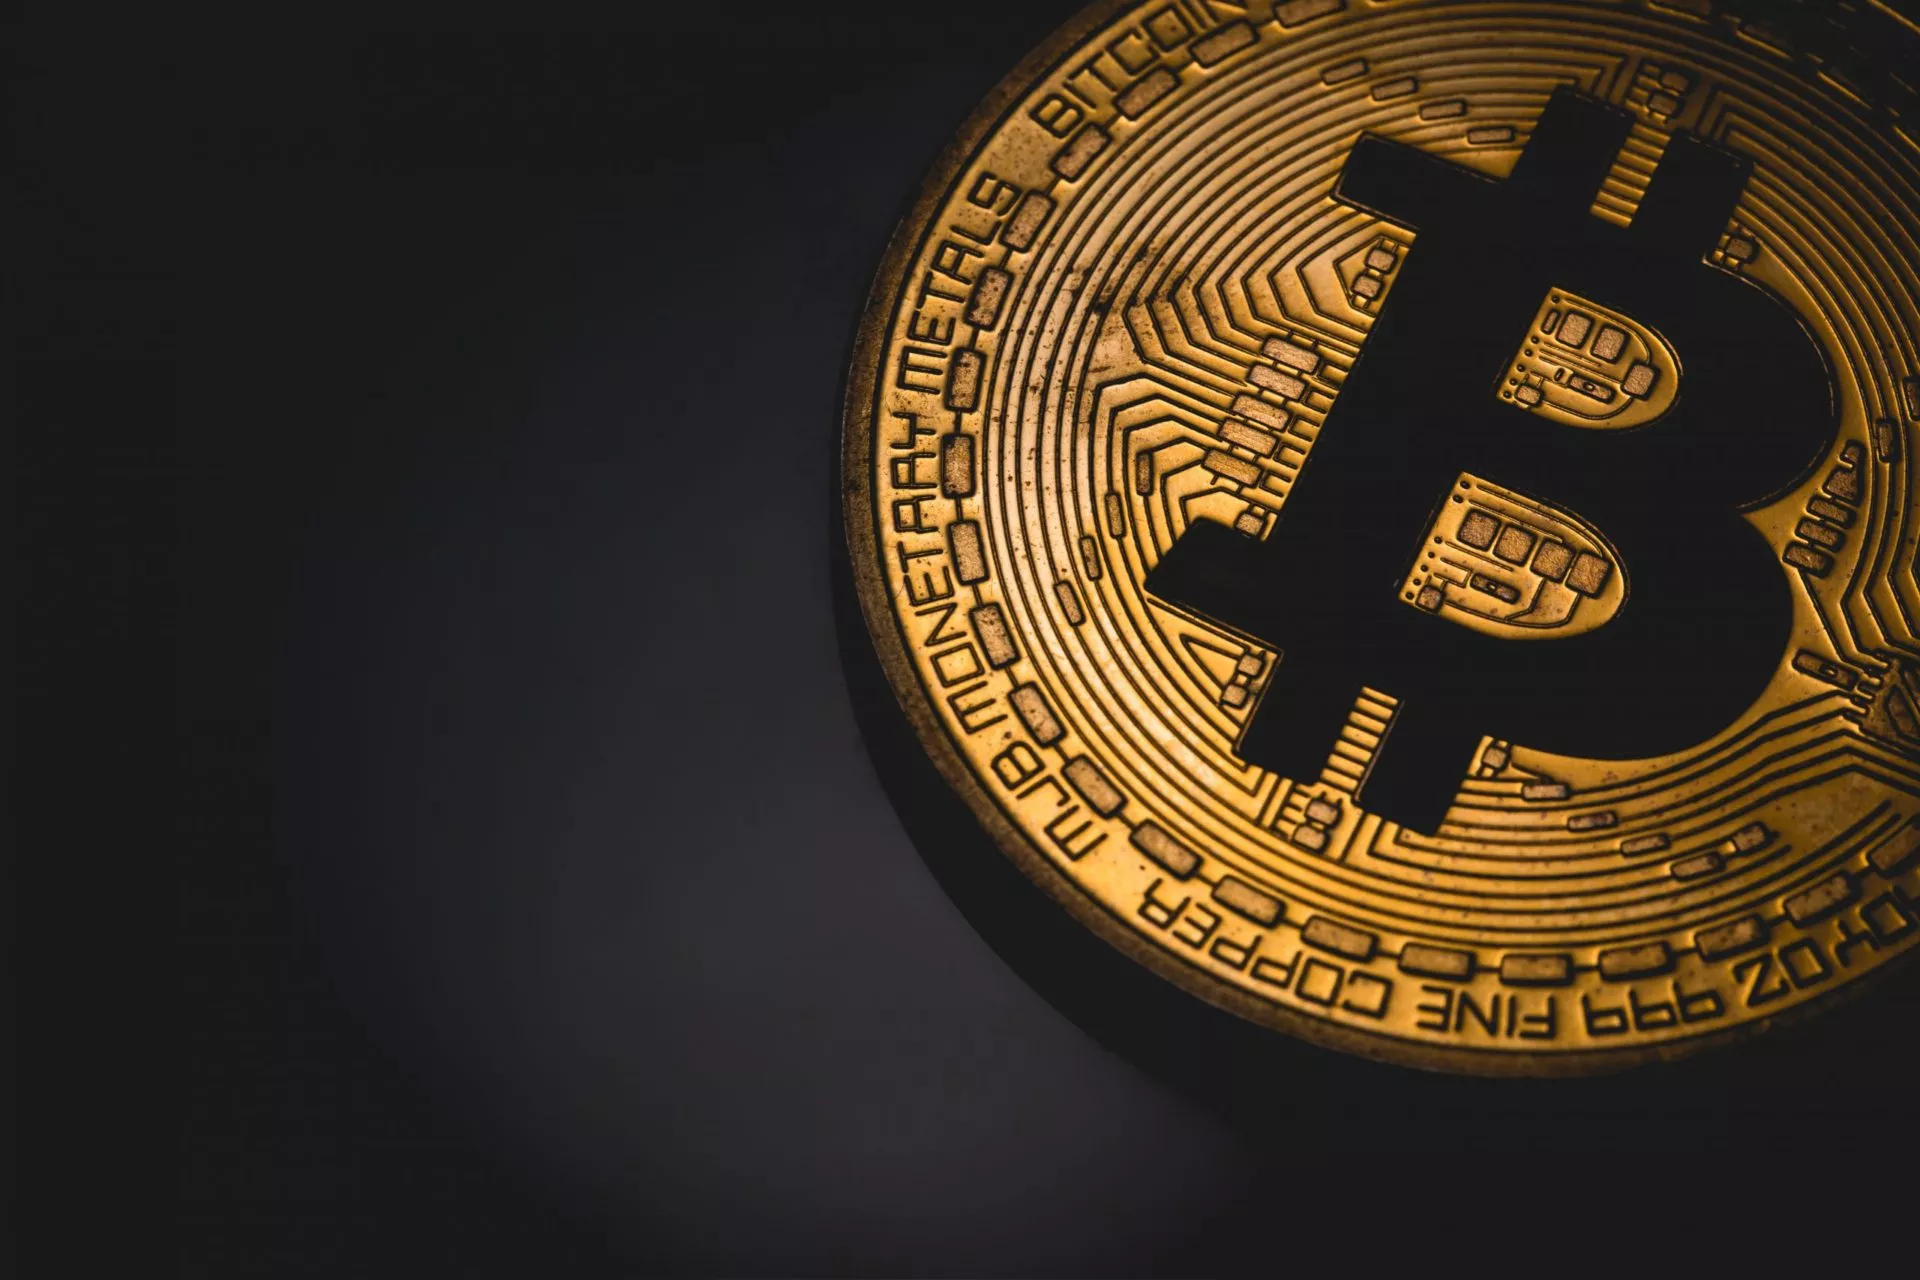 “Grote investeerders kunnen Bitcoin naar $500K duwen”